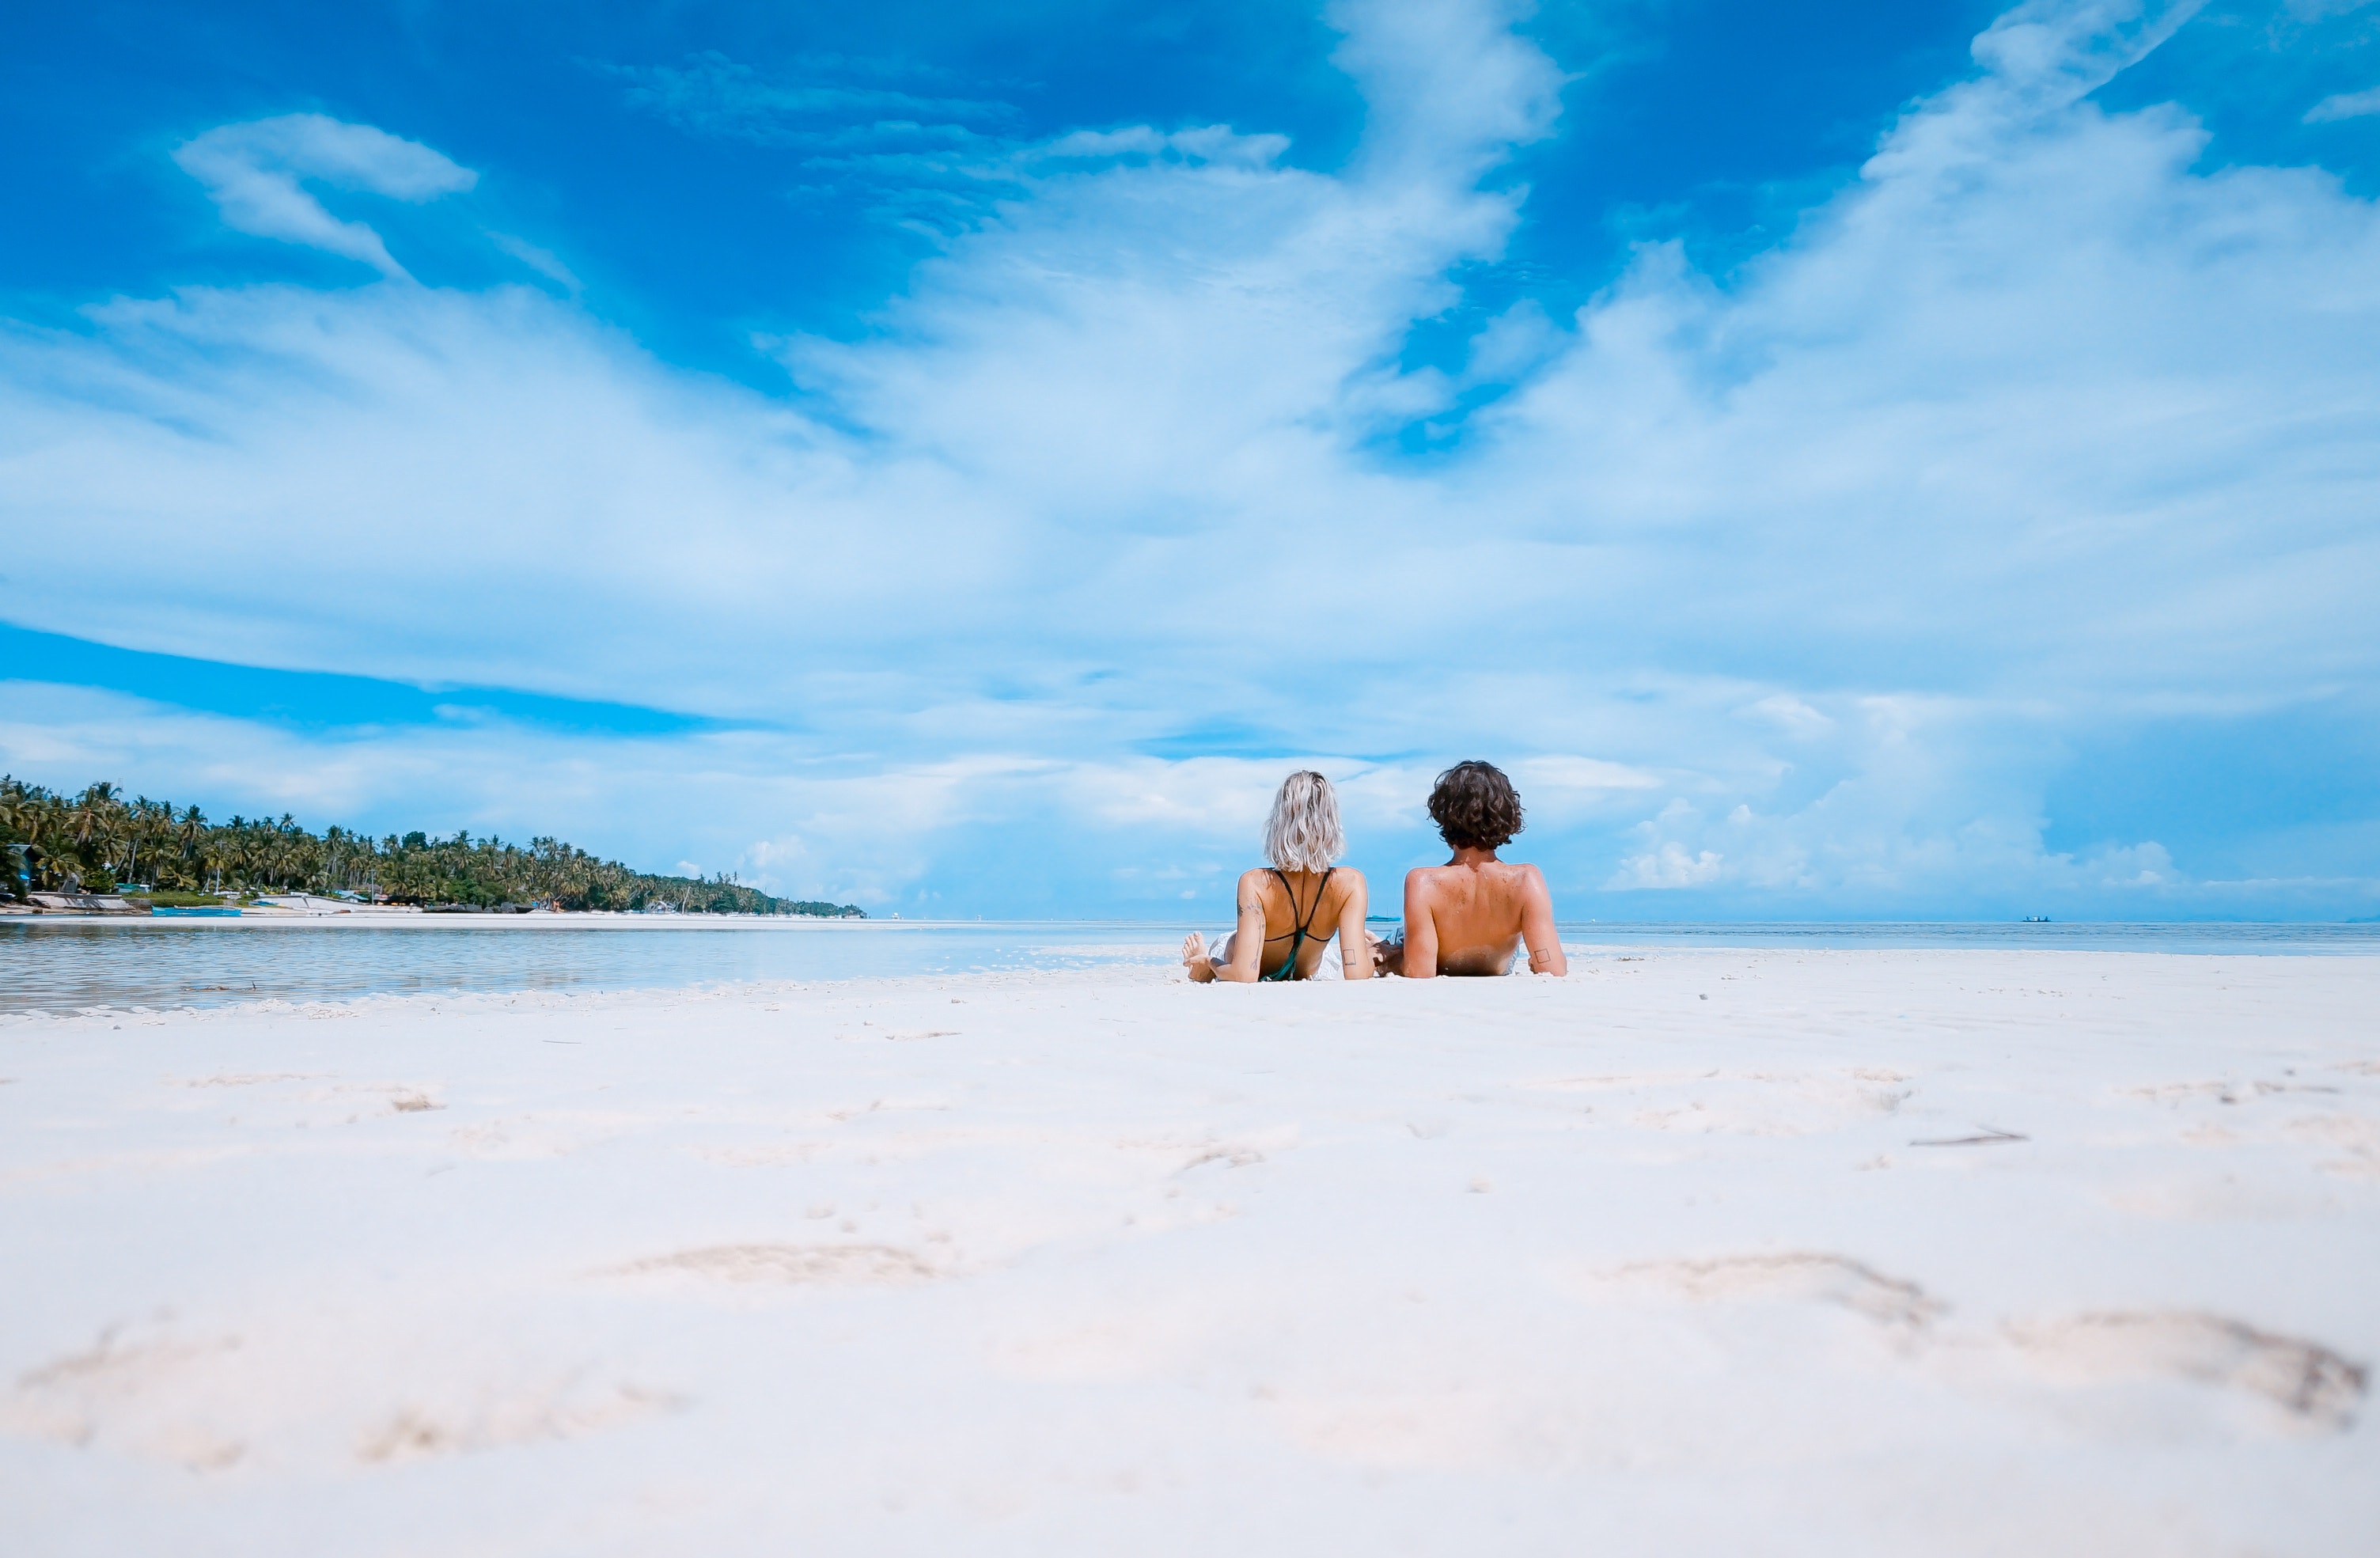 A couple enjoying a sandy Italian beach